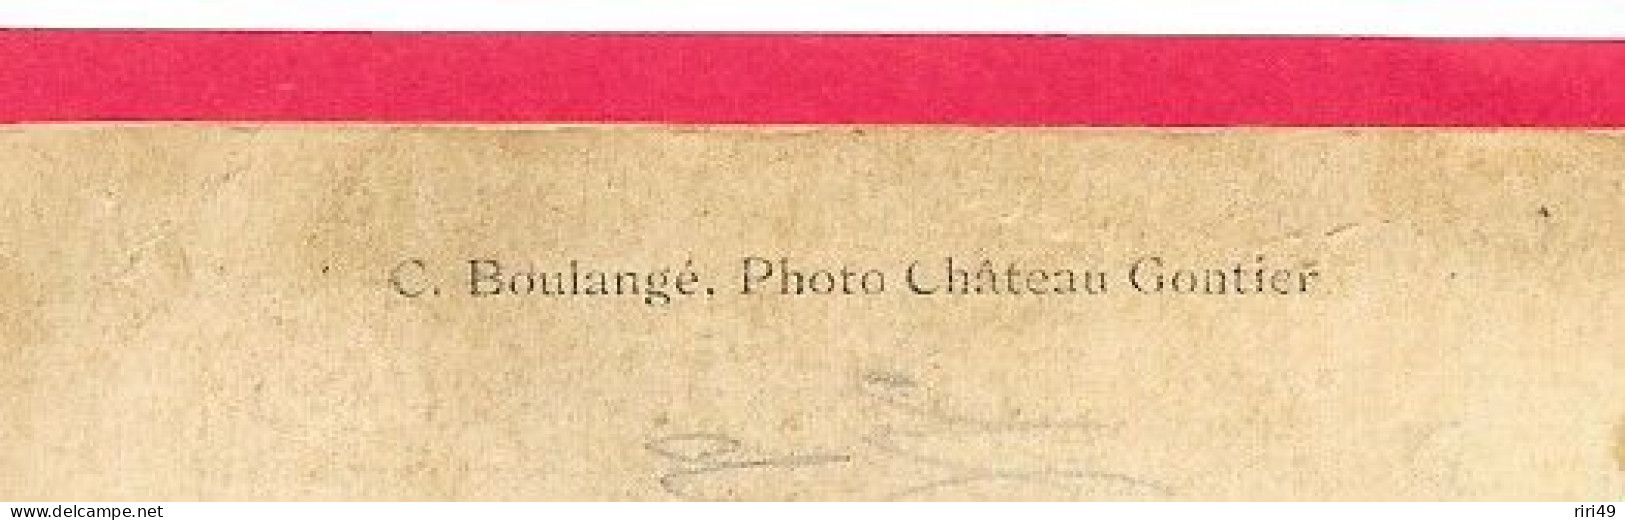 Cpa  166ème Régiment, 166e, Photographe C.Boulangé,  Photo Château Gontier, Dos Vierge, Voir Scannes Dos écrit - Personen